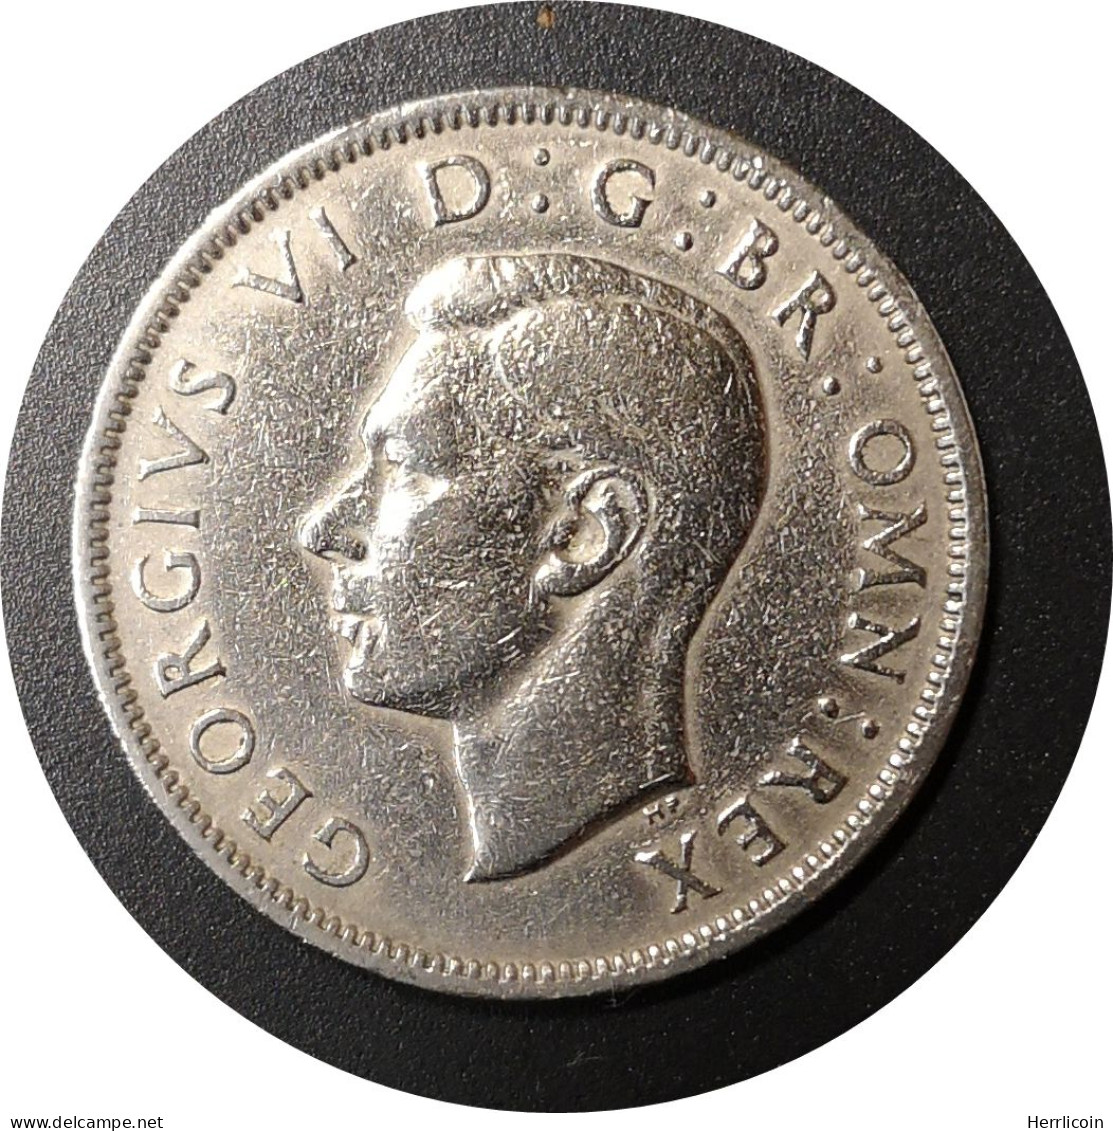 Monnaie Royaume-Uni - 1948 - 2 Shillings George VI - J. 1 Florin / 2 Schillings